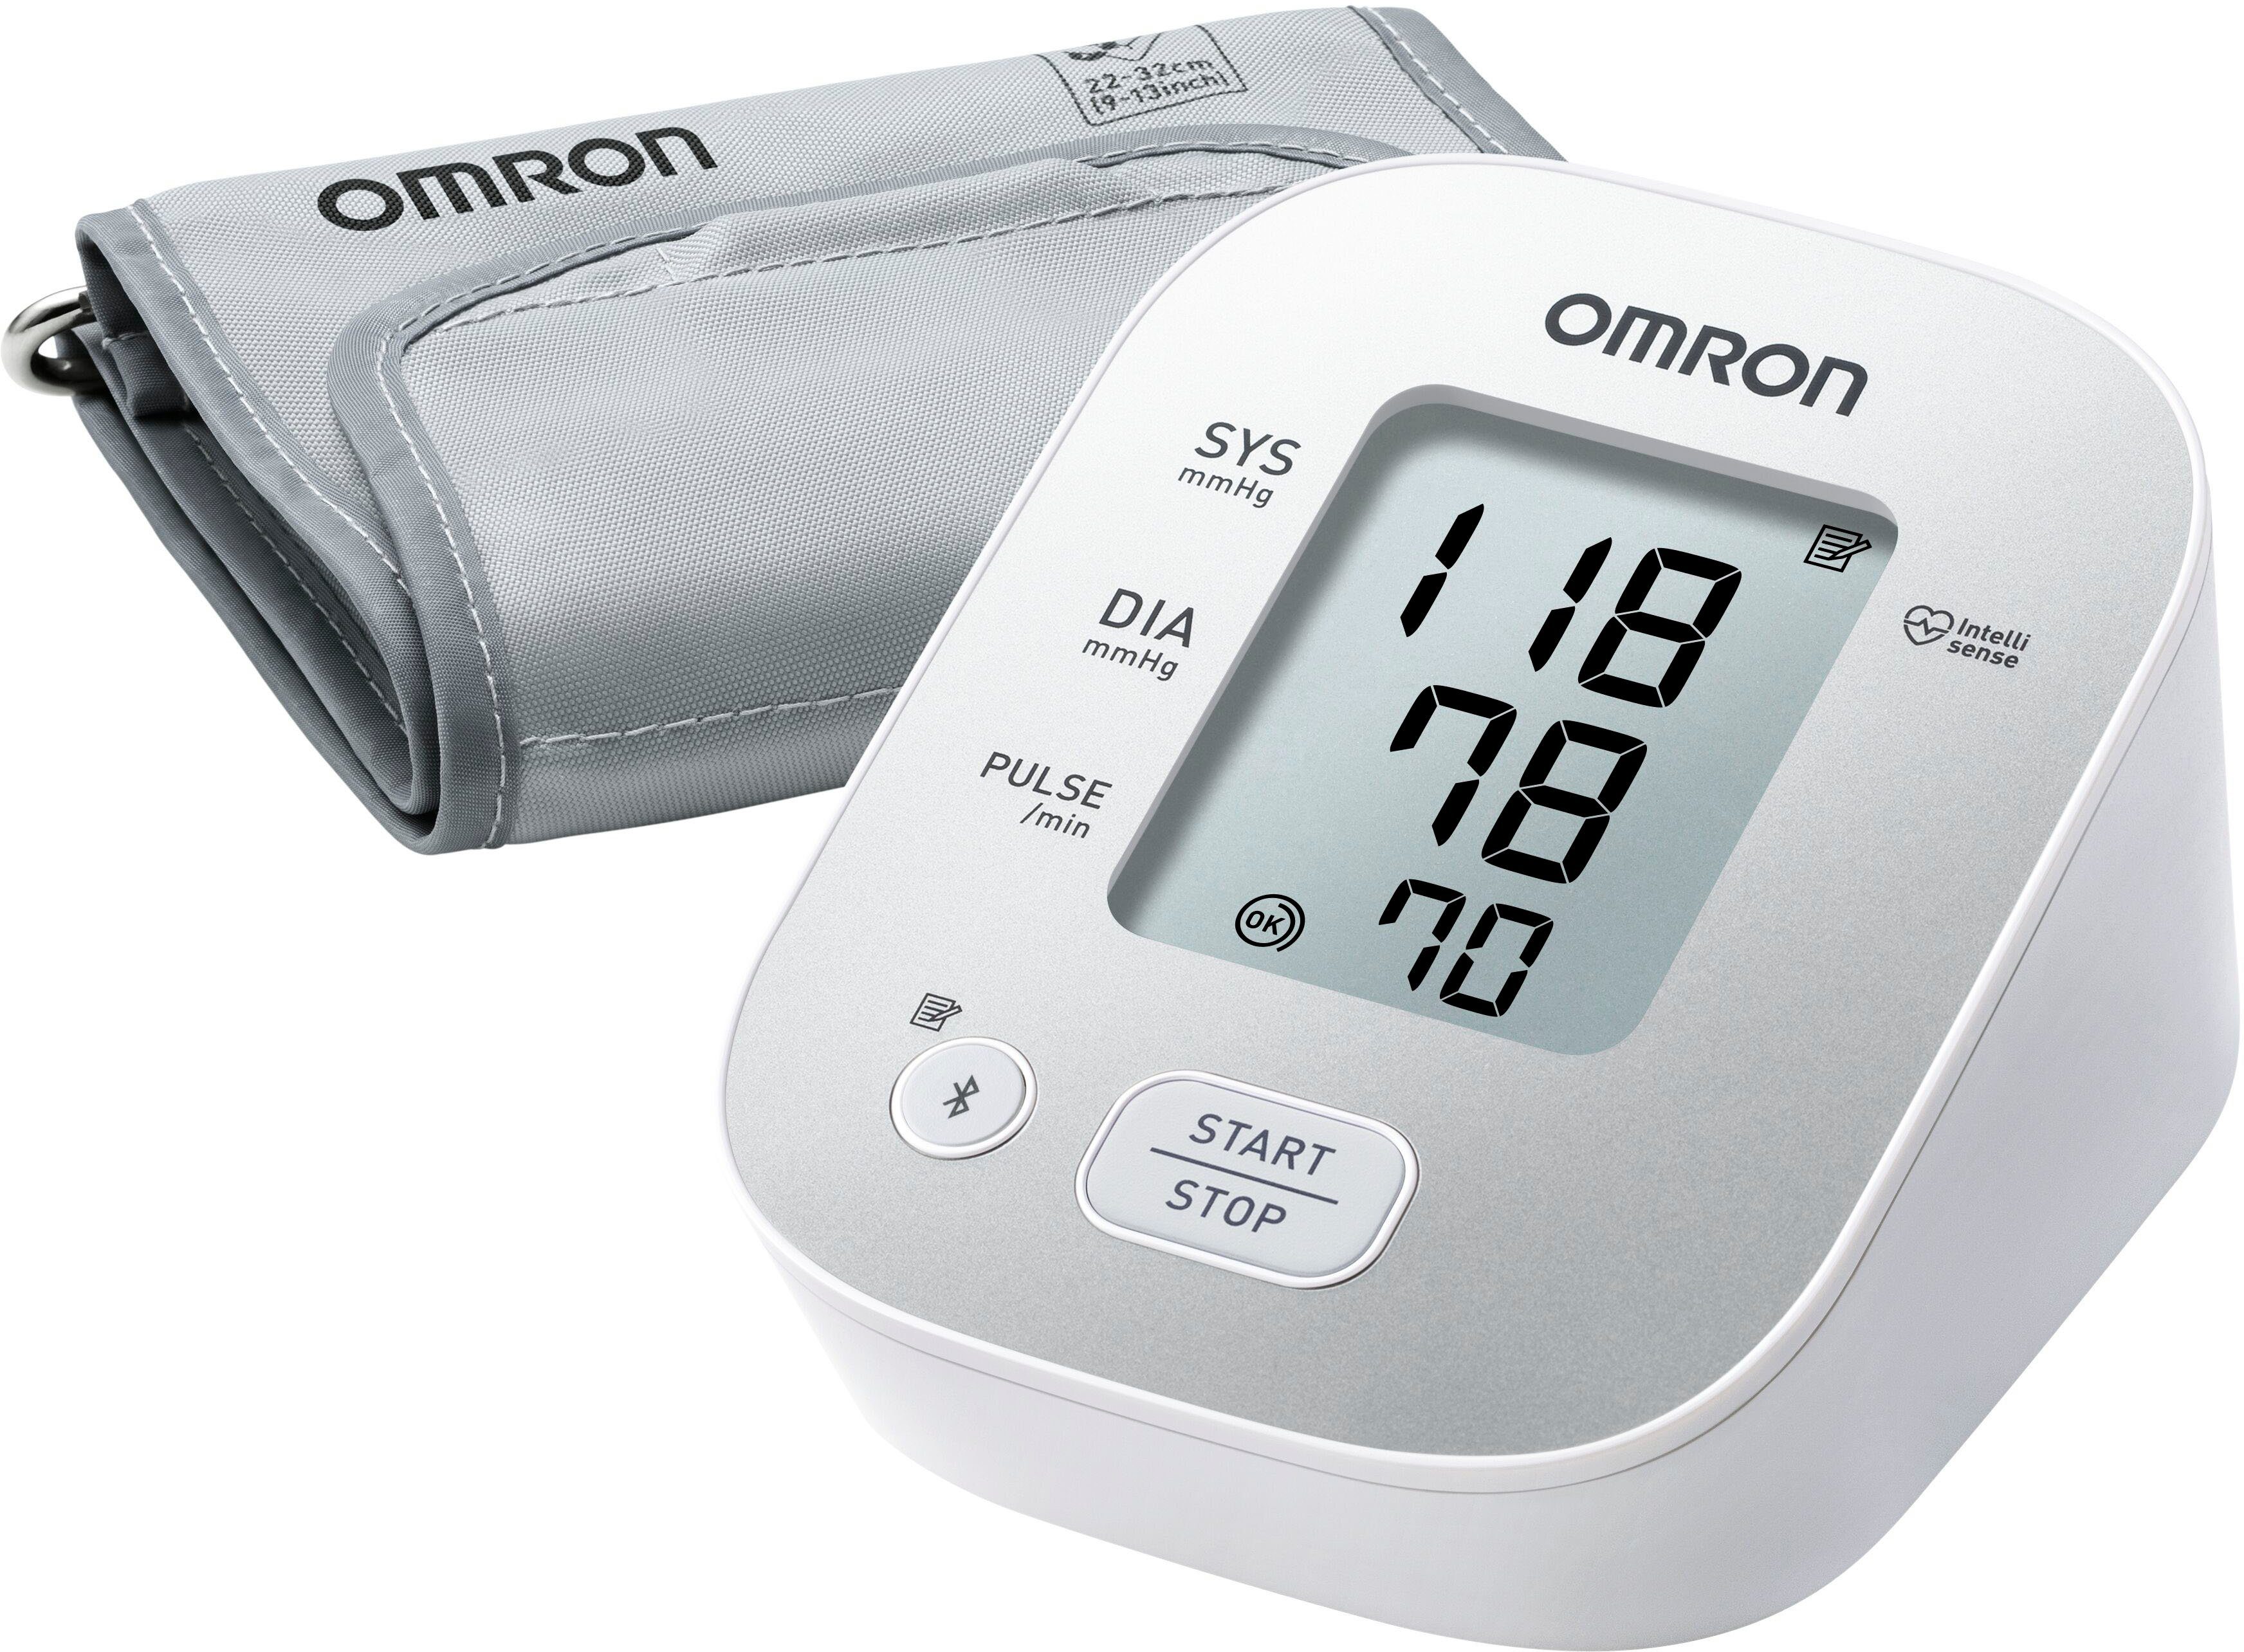 Detecteerbaar in verlegenheid gebracht aangenaam Omron Bovenarm-bloeddrukmeter X2 Smart voor thuis met bluetooth-compatibiliteit  en smartphone-app online kopen | OTTO